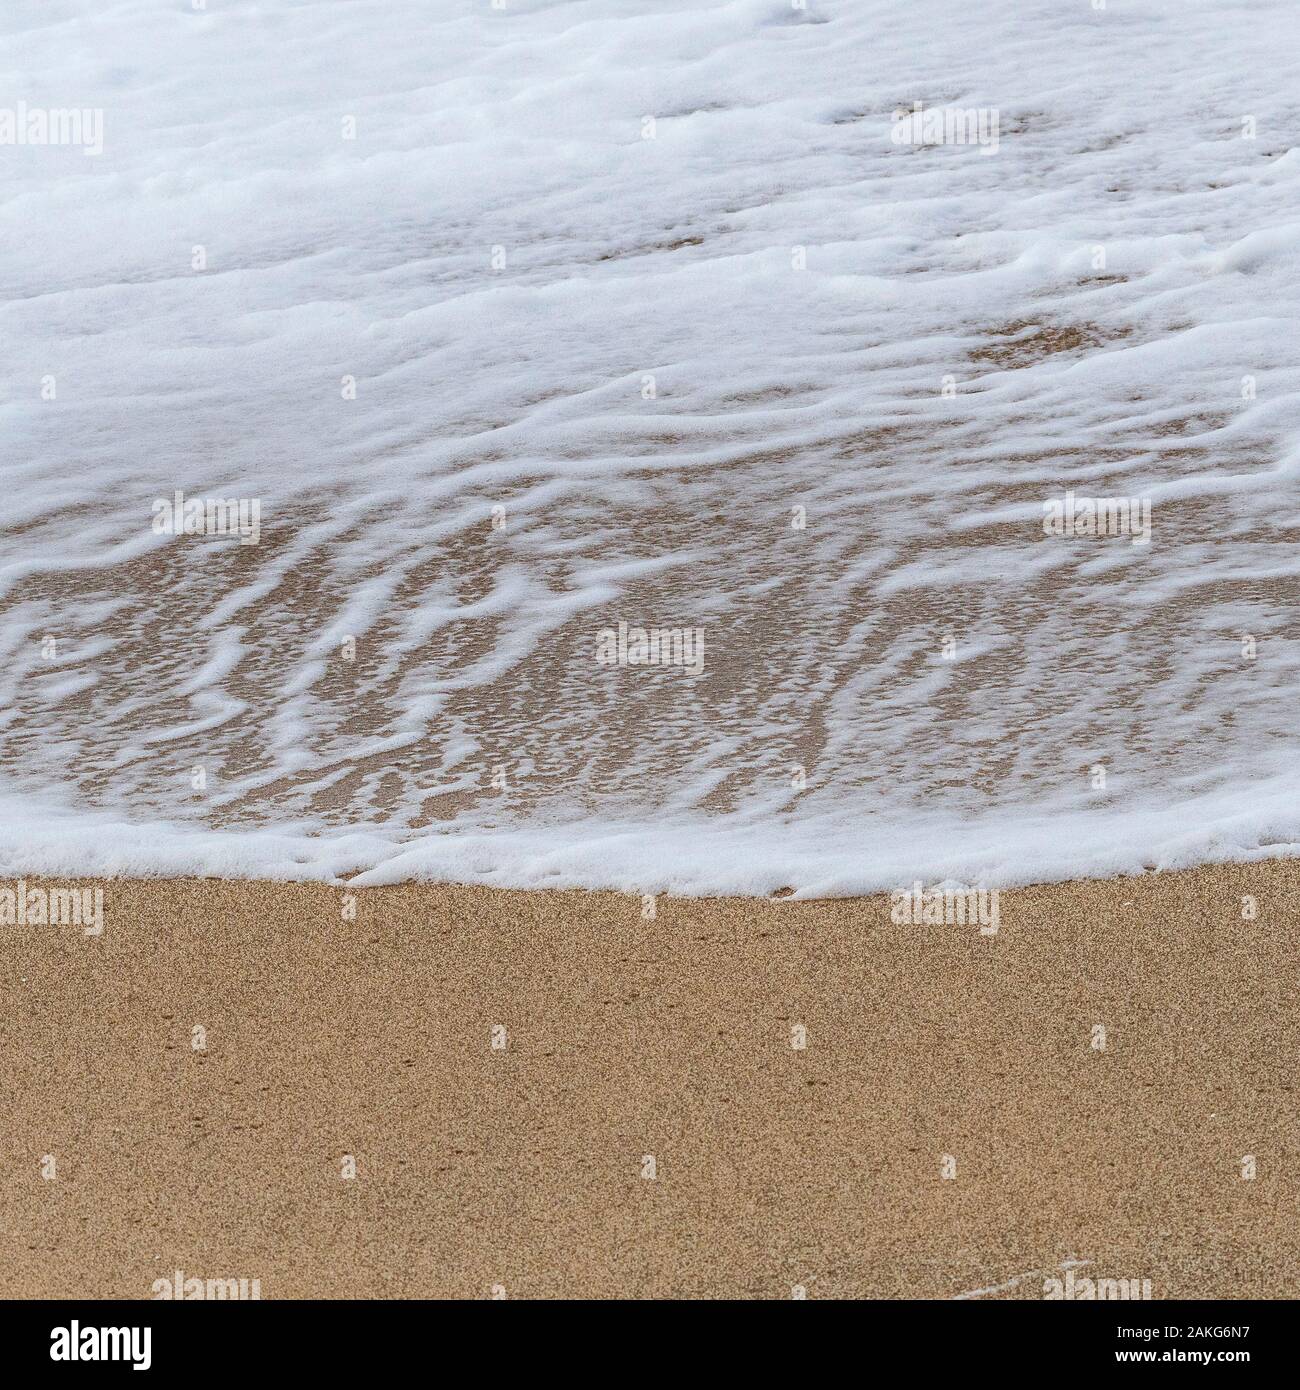 La mousse d'une petite vague abandonné sur une plage que la vague se retire. Banque D'Images